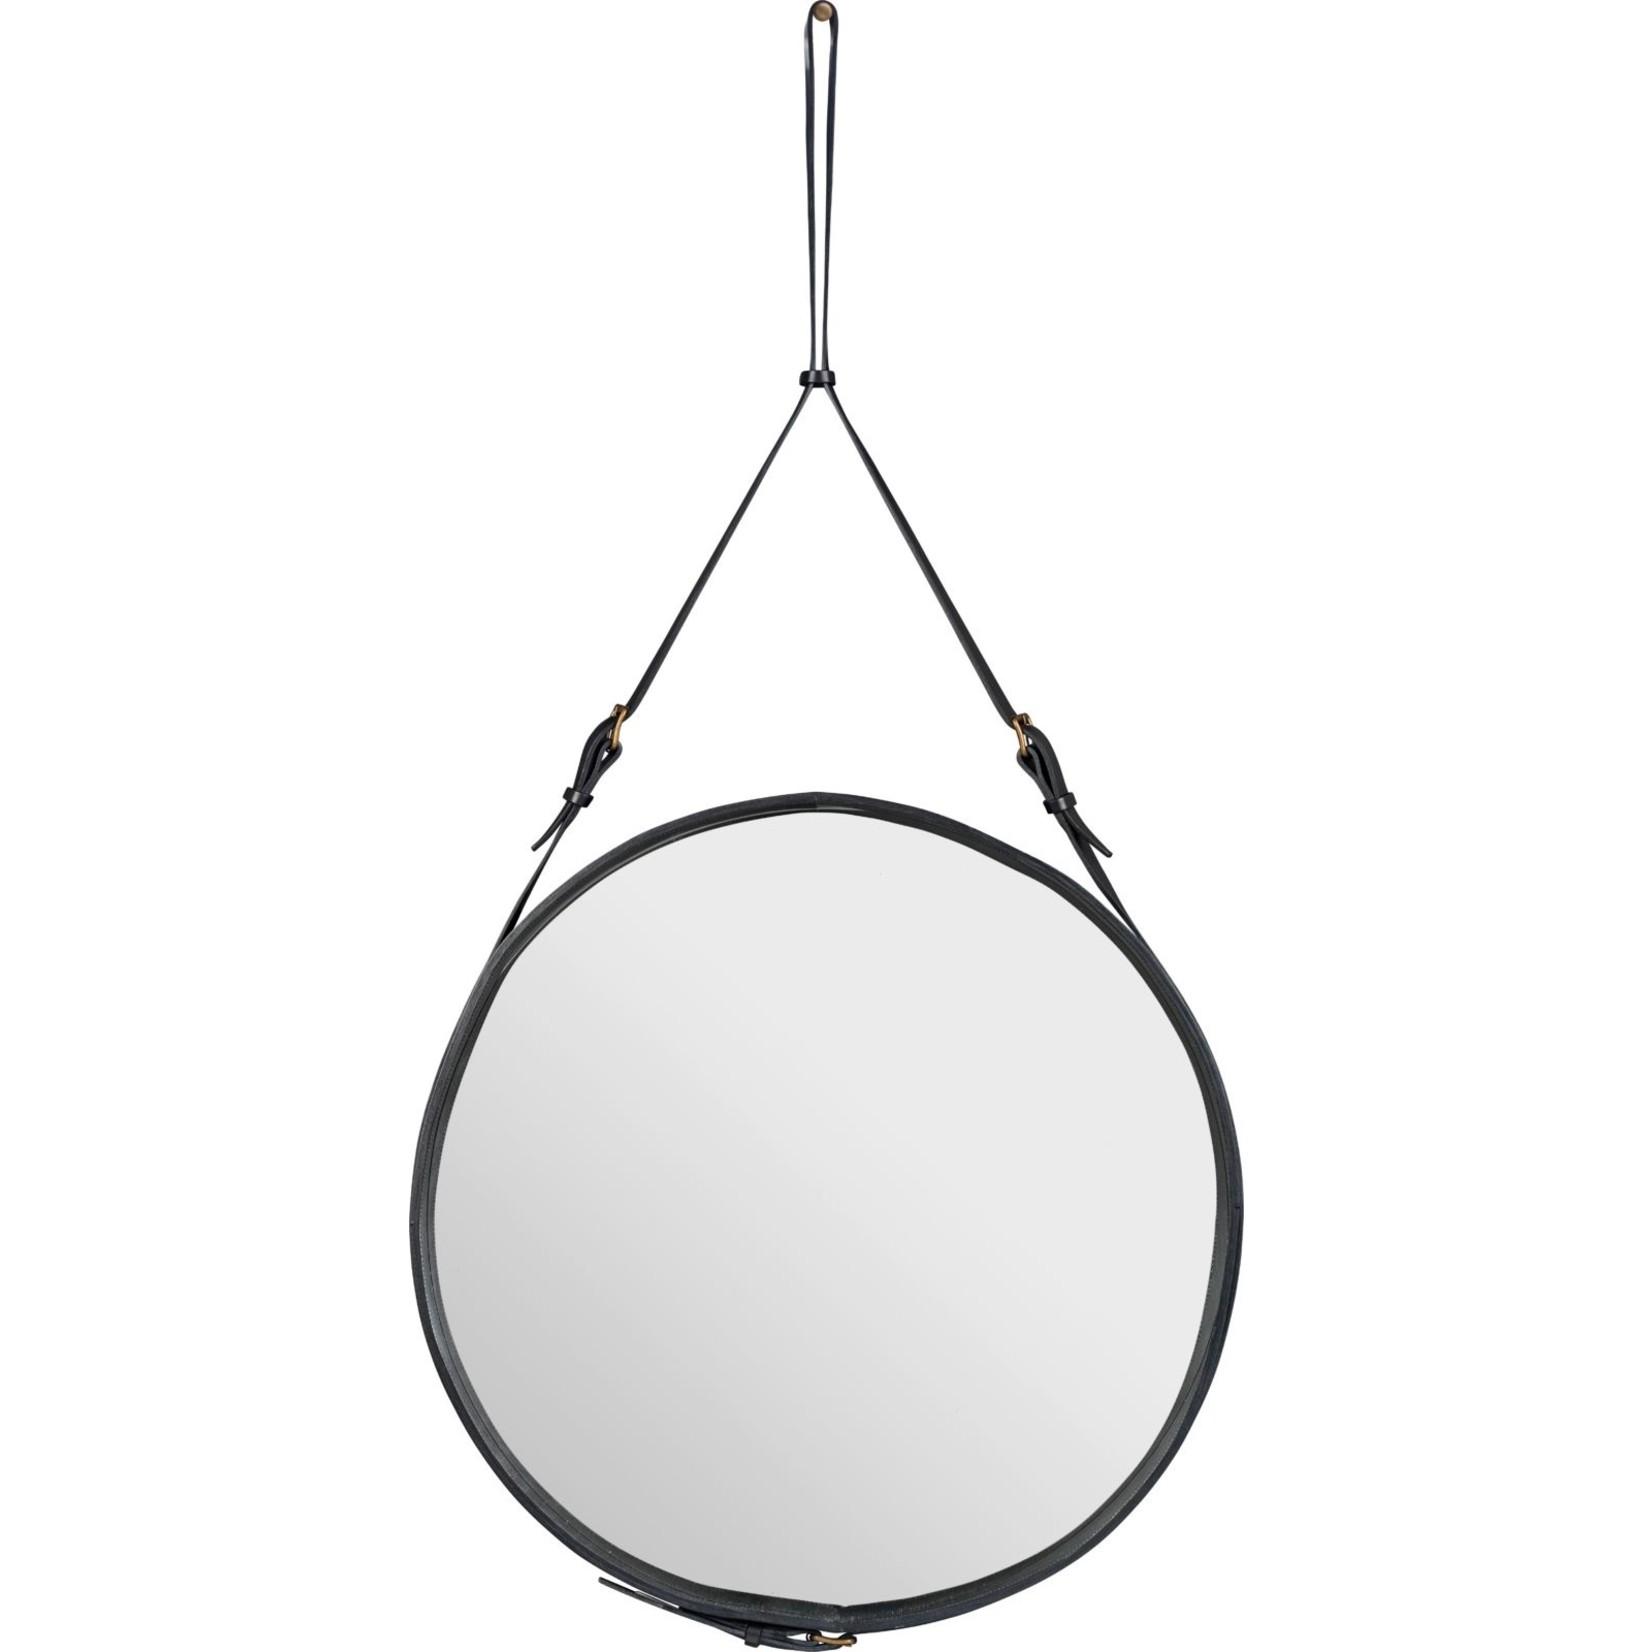 Gubi Wall mirror Adnet - Round - Ø70 - Black Leather